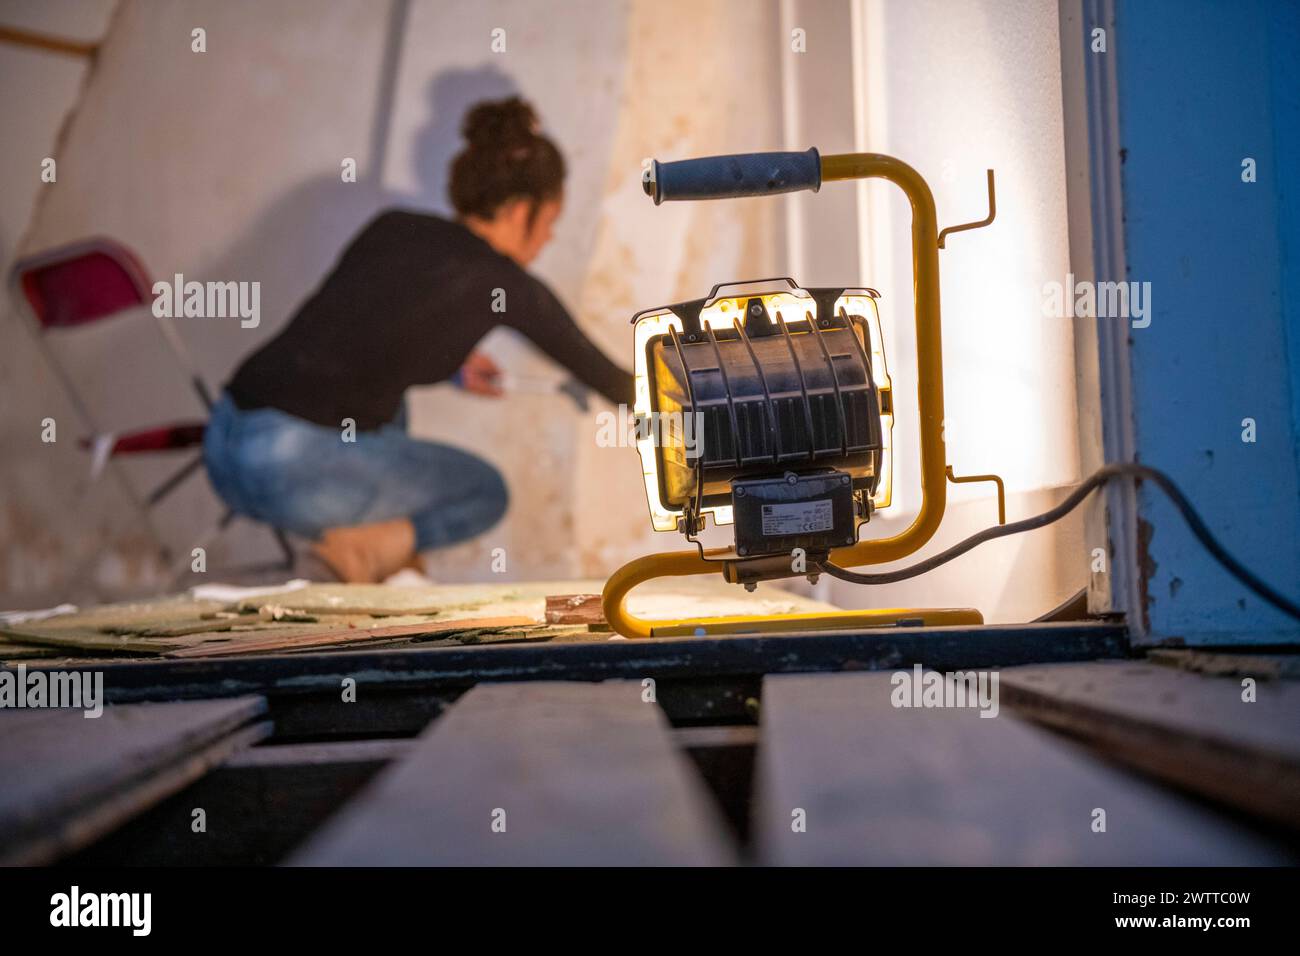 Un passionné de bricolage concentre peint un mur dans une pièce en cours de rénovation. Banque D'Images